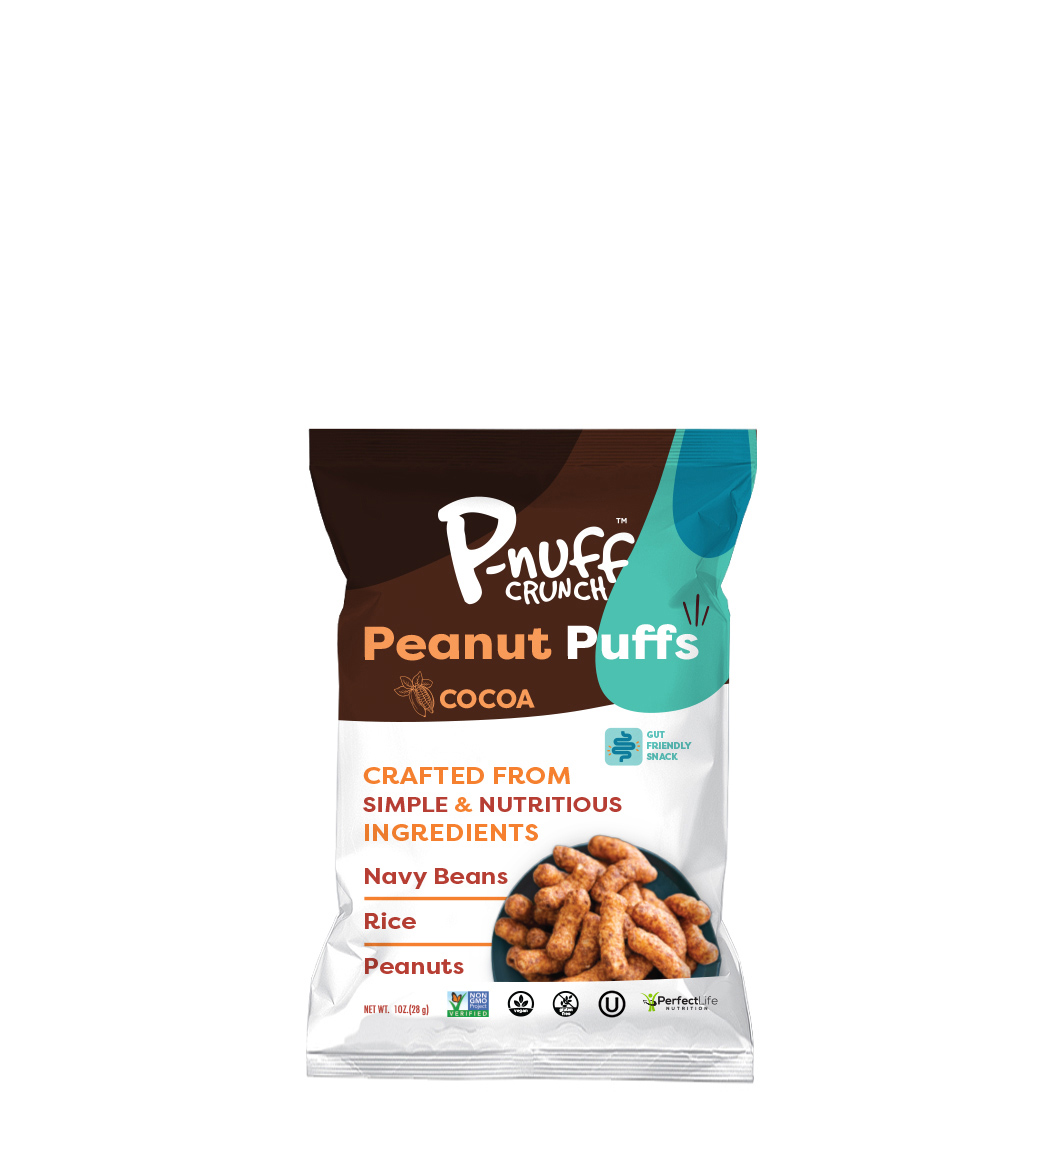 P-nuff Crunch Cocoa 6 units per case 1.0 oz